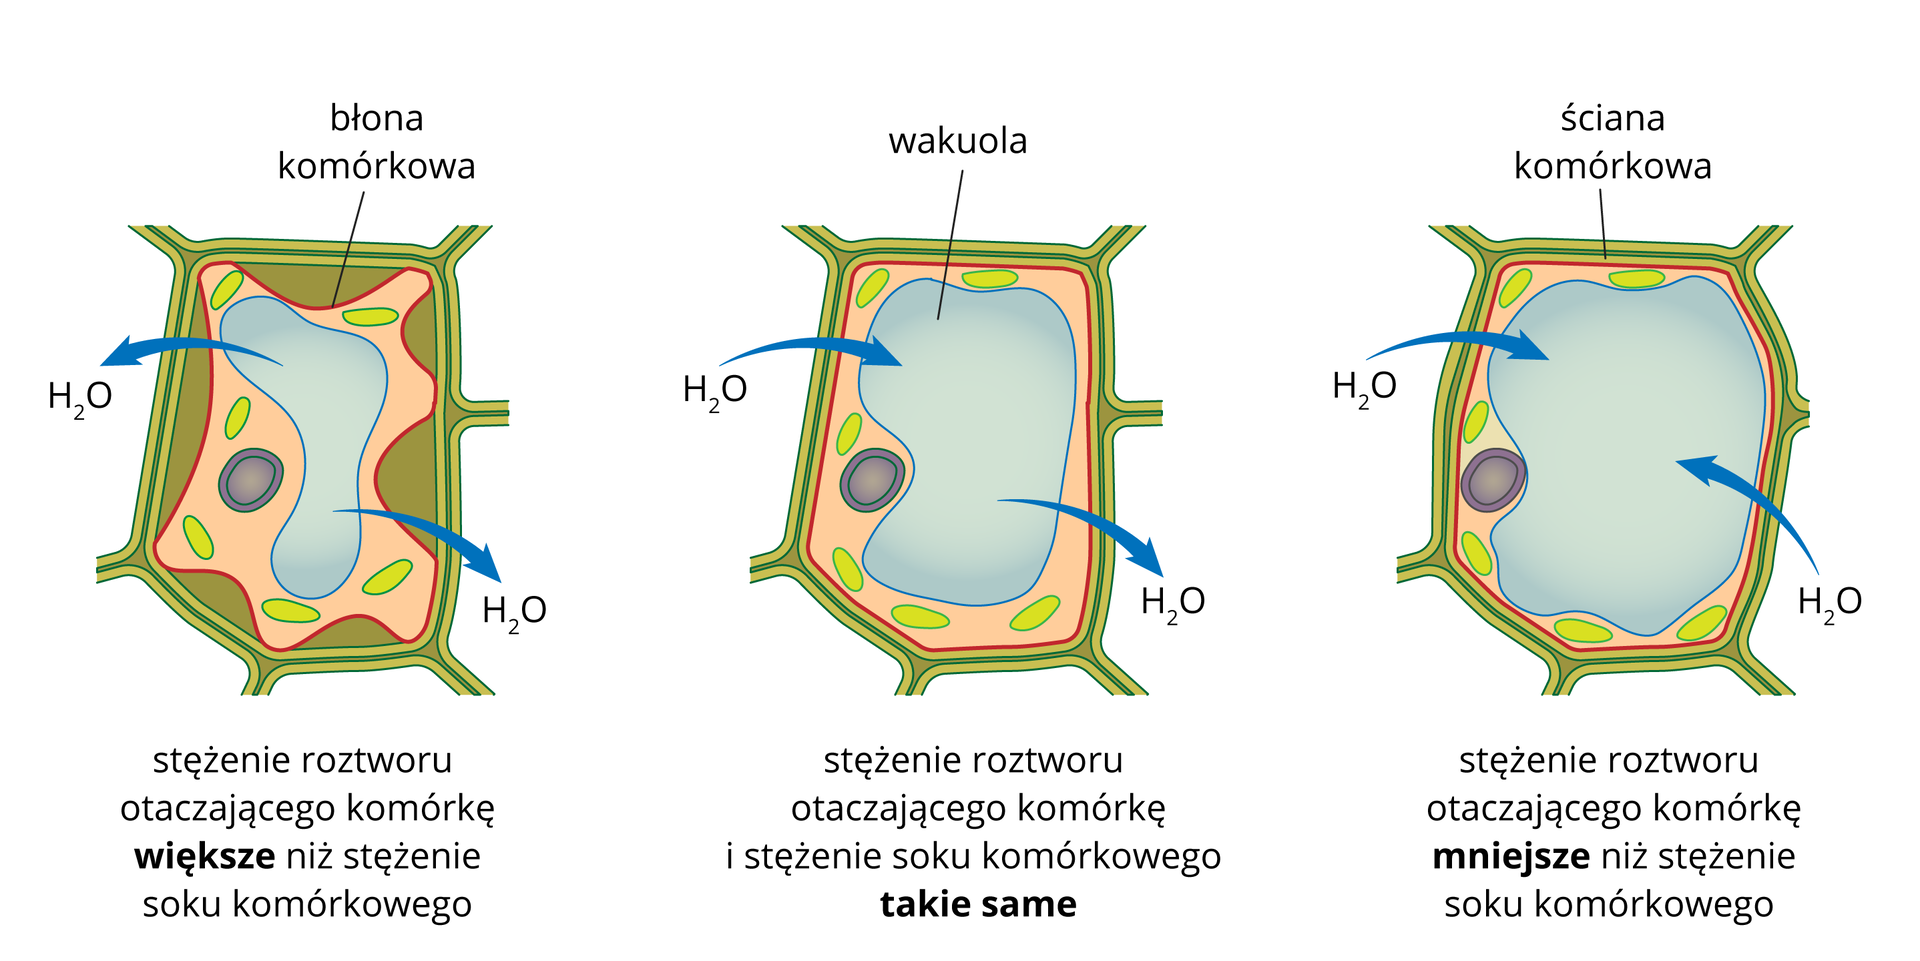 Ilustracja przedstawia 3 komórki roślinne. Pierwsza z lewej strony jest umieszczona w roztworze o stężeniu wyższym niż sok komórkowy. Z komórki wypływa woda do otoczenia. Druga komórka jest w roztworze o takim samym stężeniu jak sok komórkowy. Nie ma przepływu wody. Trzecia komórka jest otoczona czystą wodą. Woda wnika do komórki.